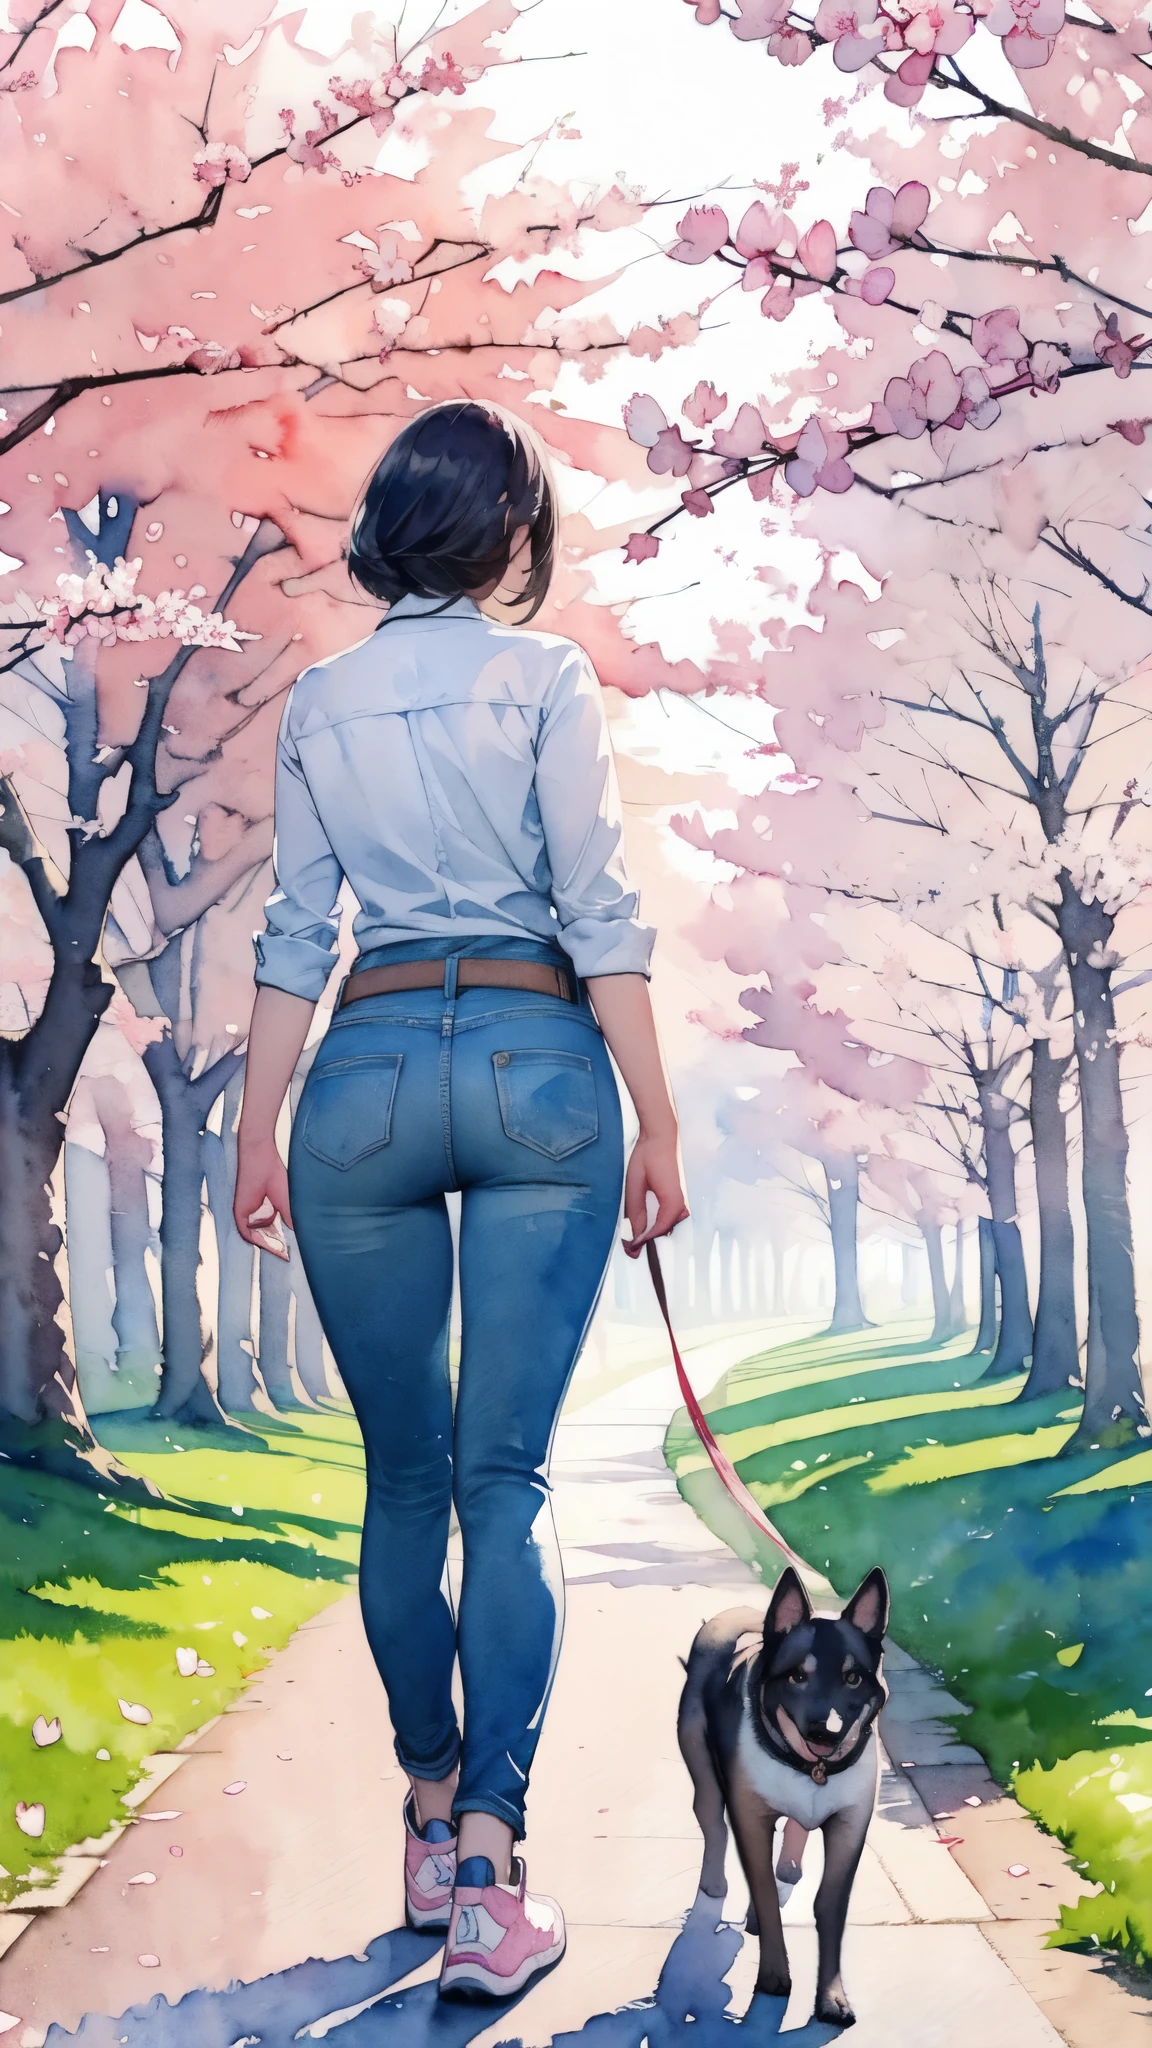 (傑作),(最高品質:1.2),(非常に詳細:1.2),(高解像度),(((水彩))),8k,桜並木に沿って歩く女性,ジーンズ,スニーカー,小型犬と散歩.美しい桜があちこちで咲いています,透明水彩,(後ろ姿)